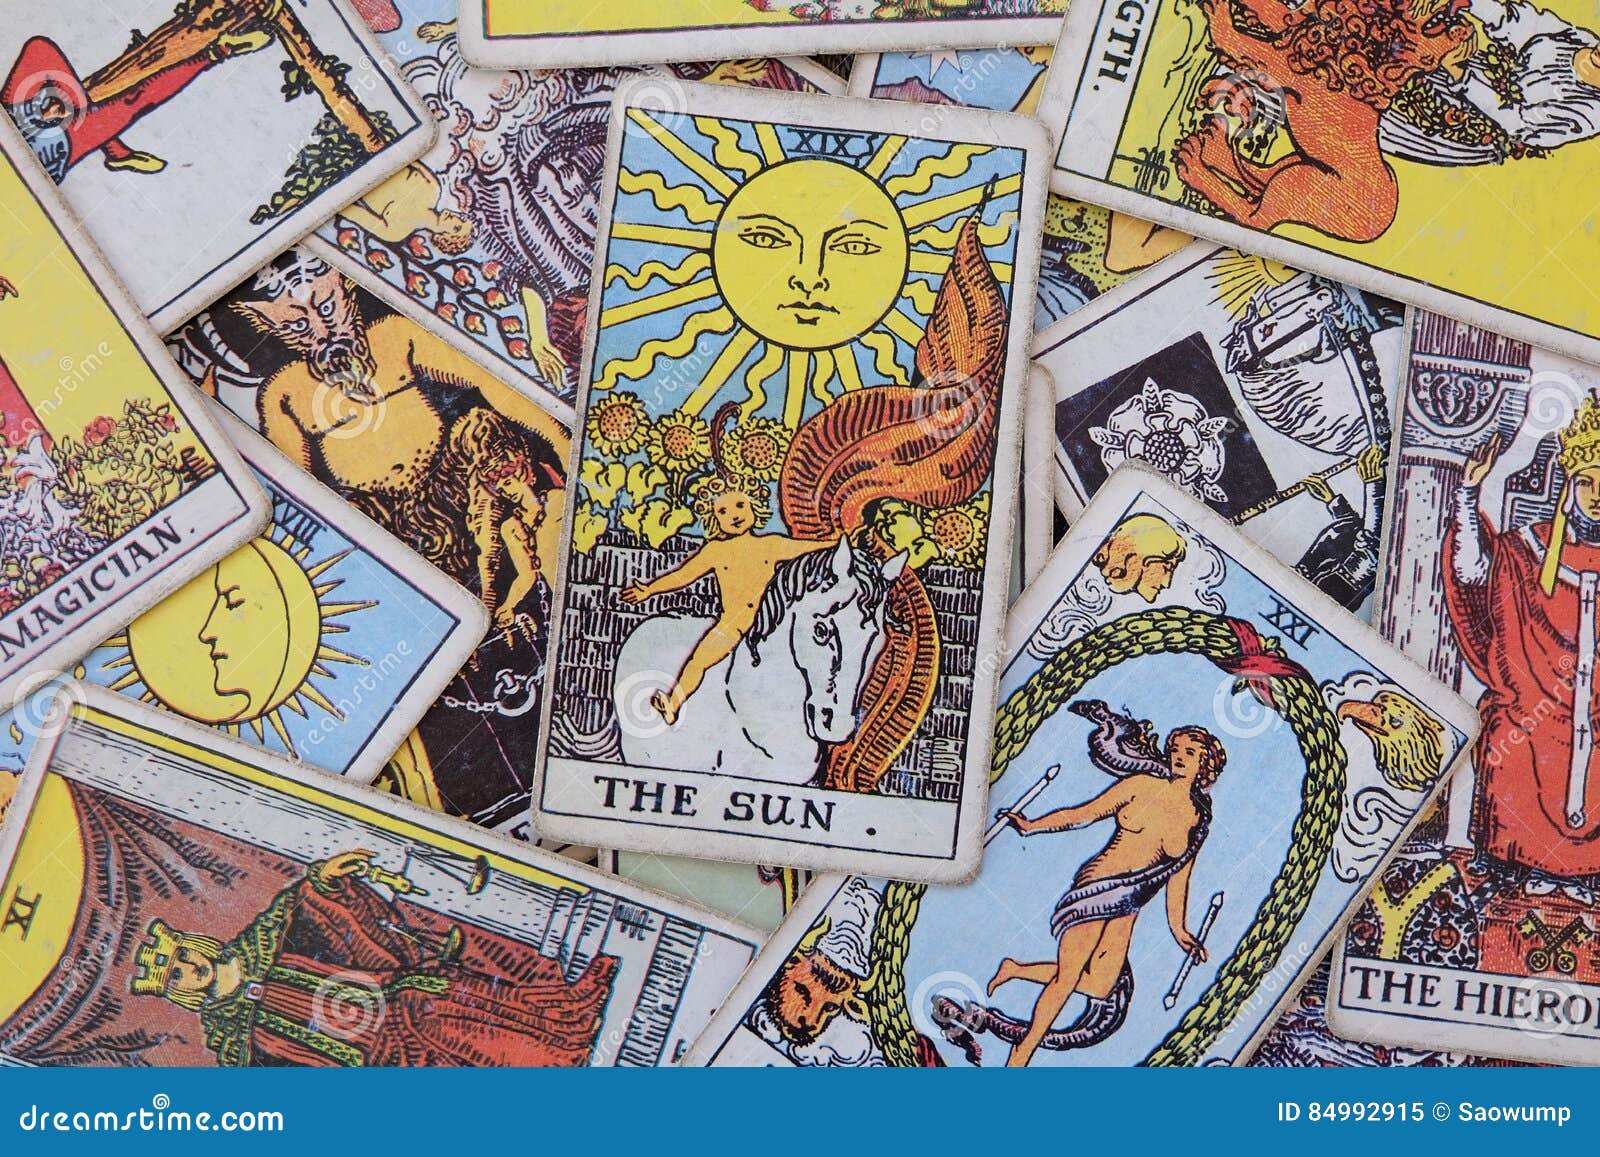 Tarot cards. stock image. Image of wallpaper, tarot, background - 84992915